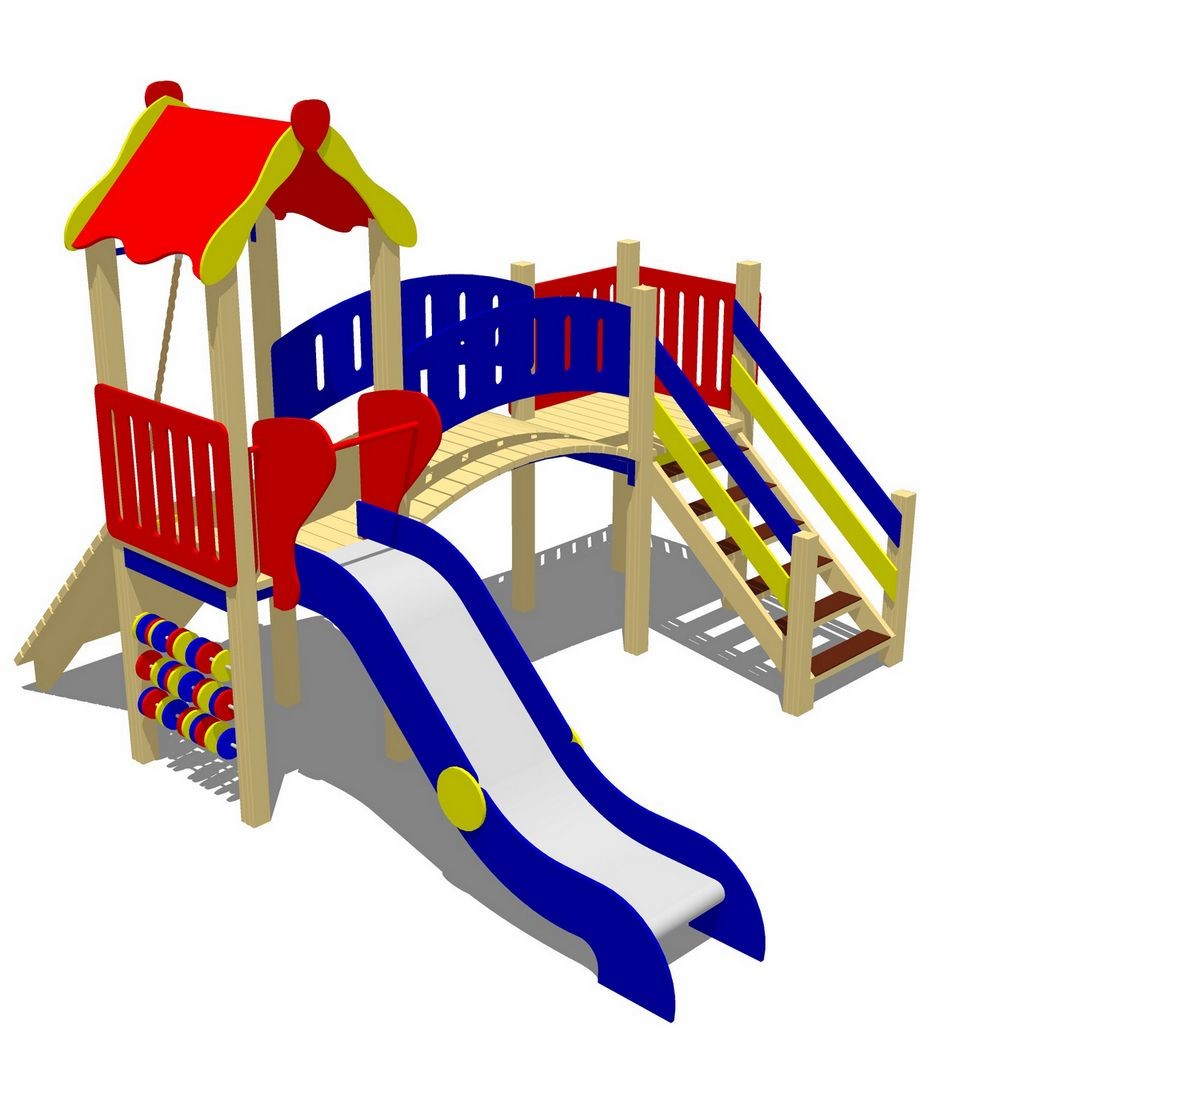 Горка для детей площадка. KSIL 2054. Игровое оборудование для детских площадок. Игровой комплекс для детей. Оборудование для детской игровой площадки.